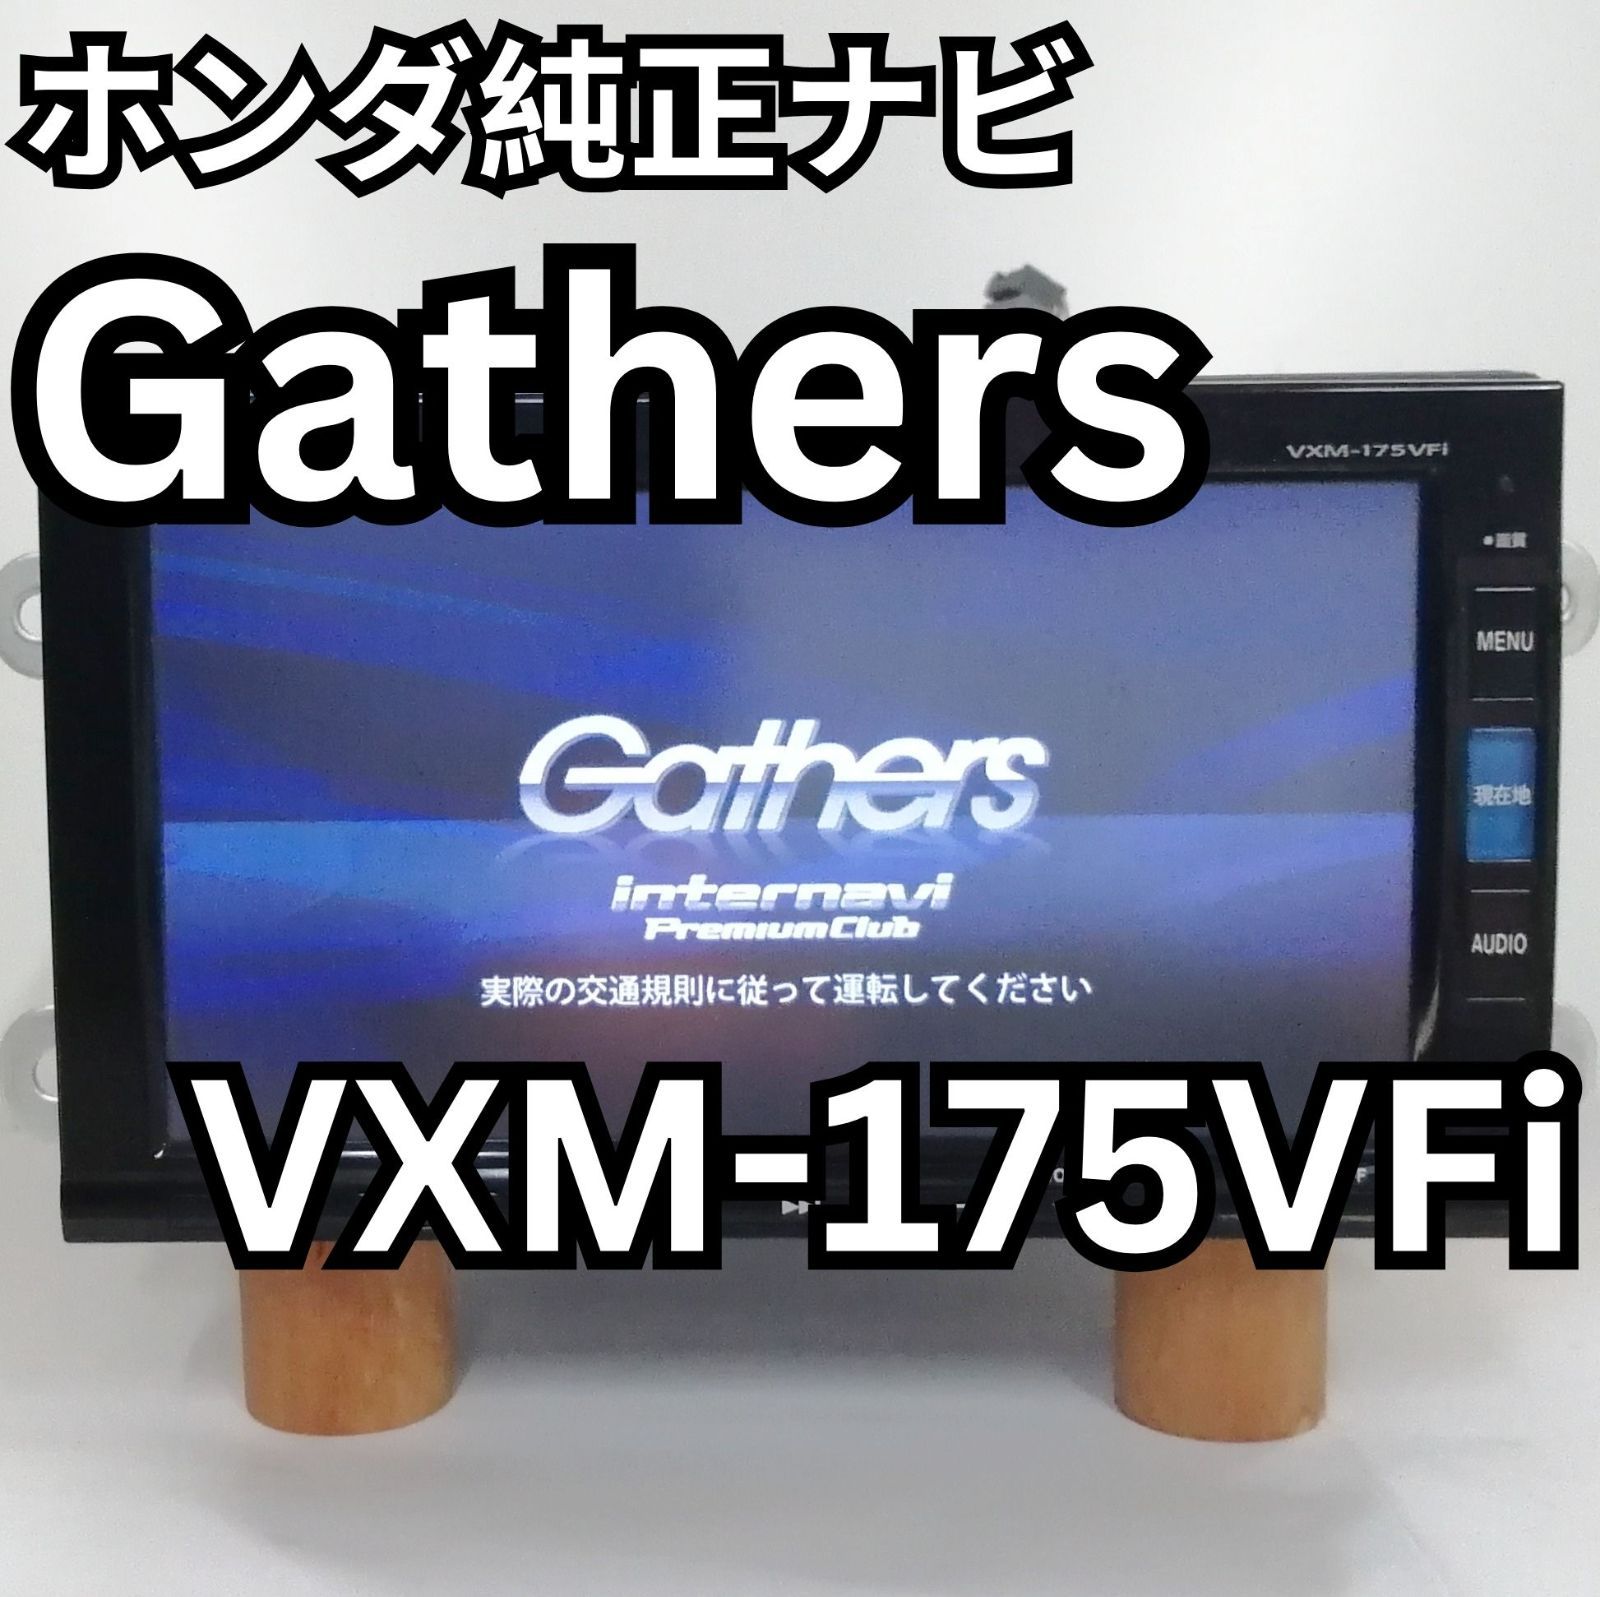 ホンダ純正OPナビ ギャザーズ(gathers) VXM-175VFi 難有(セキュリティ 